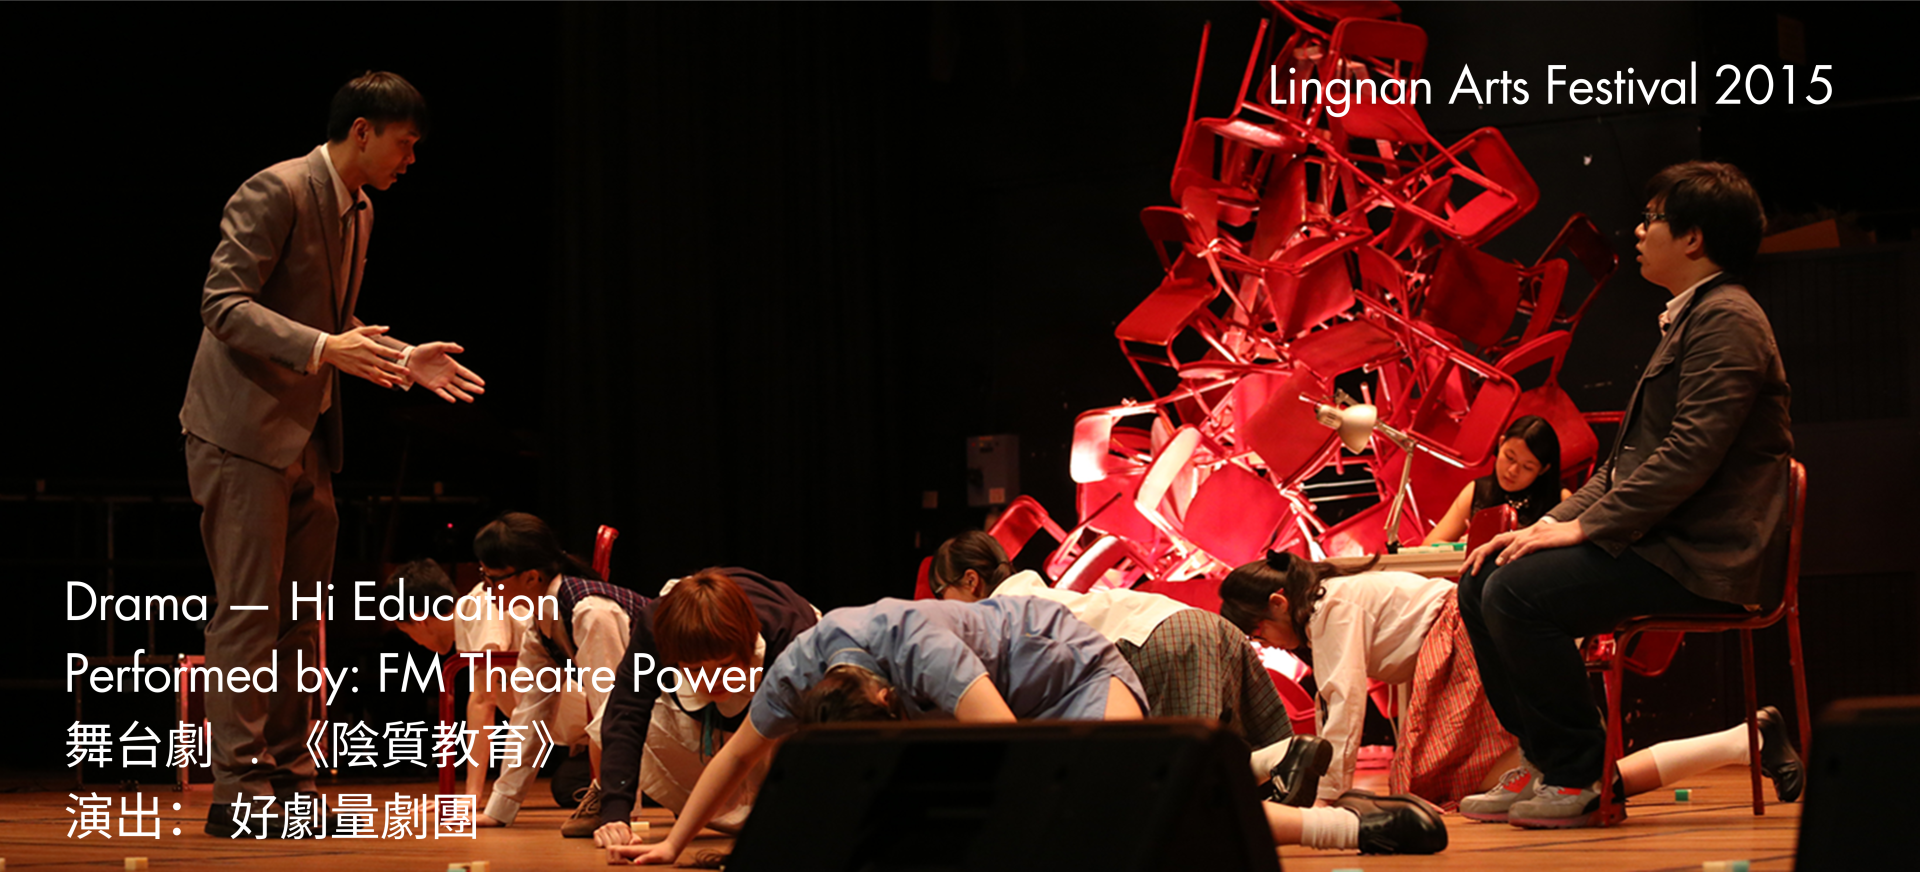 Lingnan Arts Festival 2015